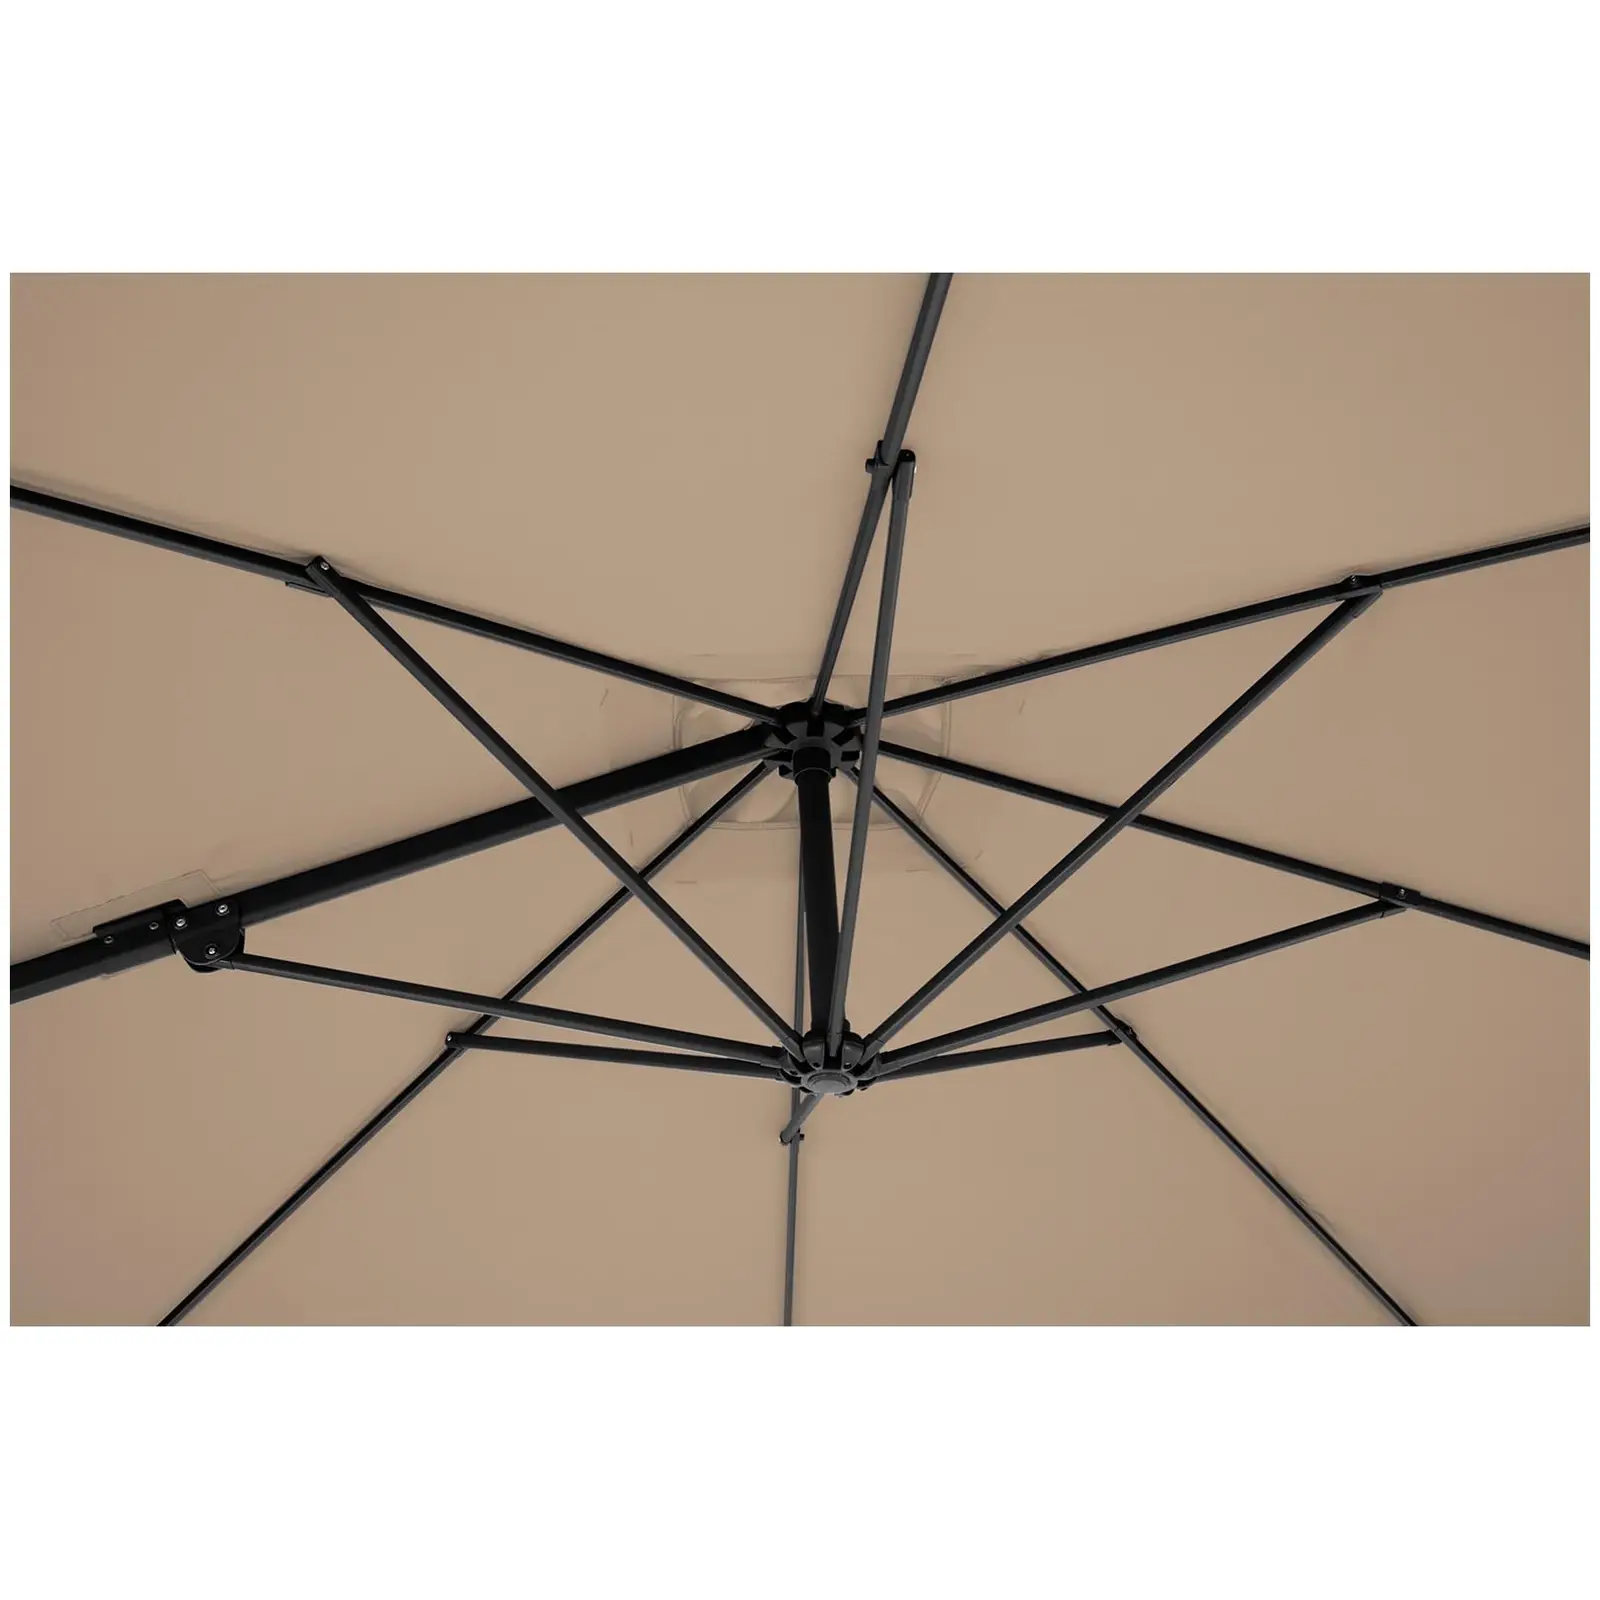 Ocasión Sombrilla semáforo - topo - cuadrado - 205 x 250 cm - giratoria